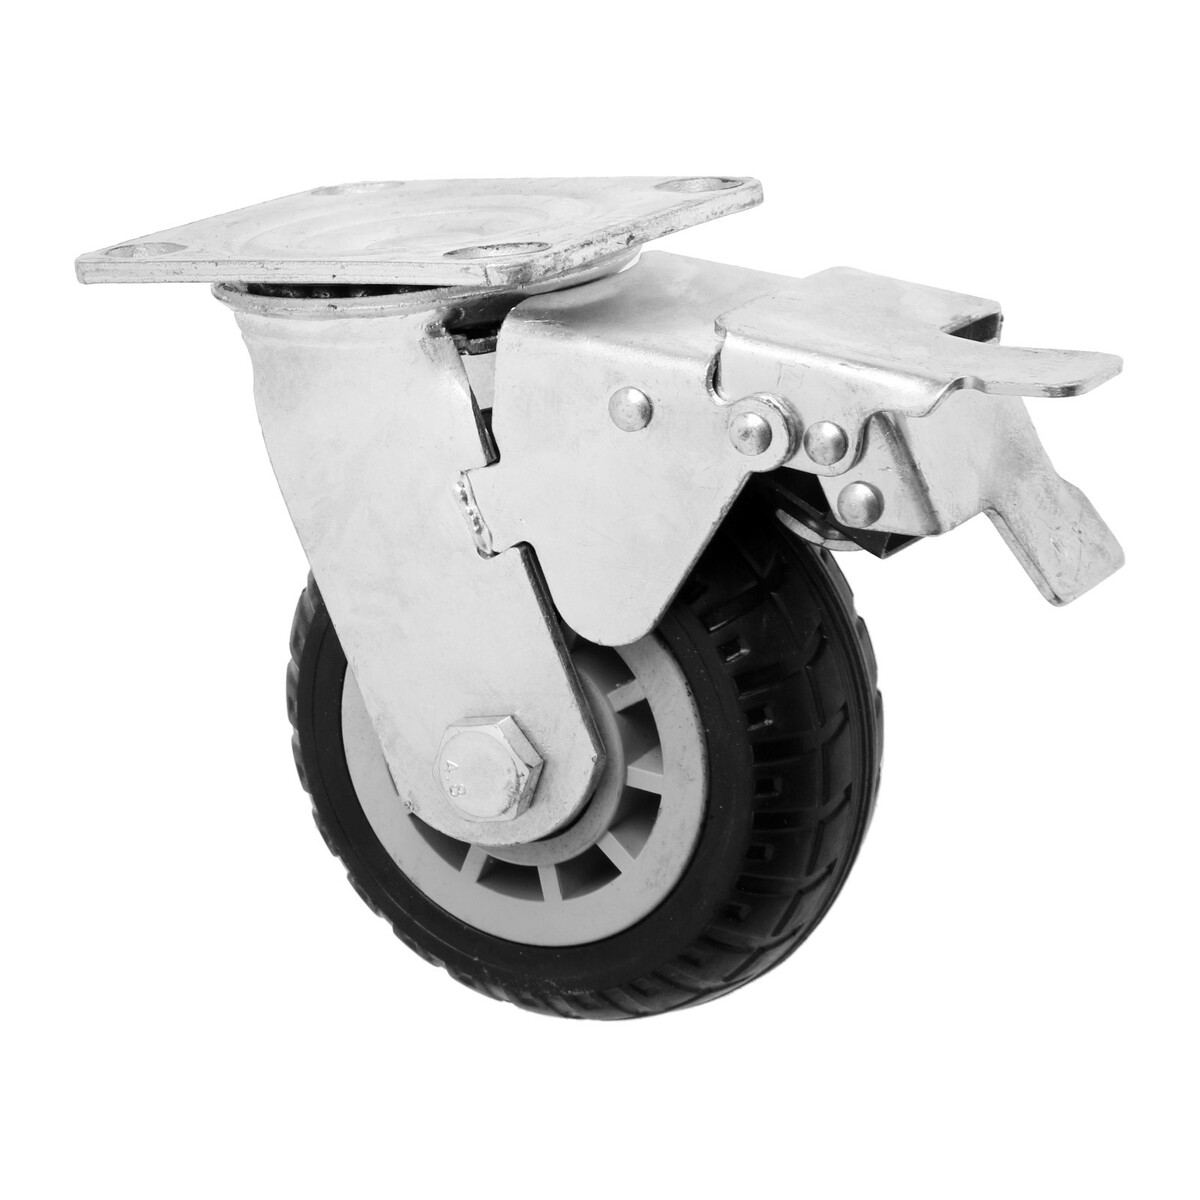 Колесо для транспортных тележек поворотное, d=125, на площадке, со стопором, покрытие резина 9917 колесо промышленное резина pr 100х30х126 мм поворотное мави про